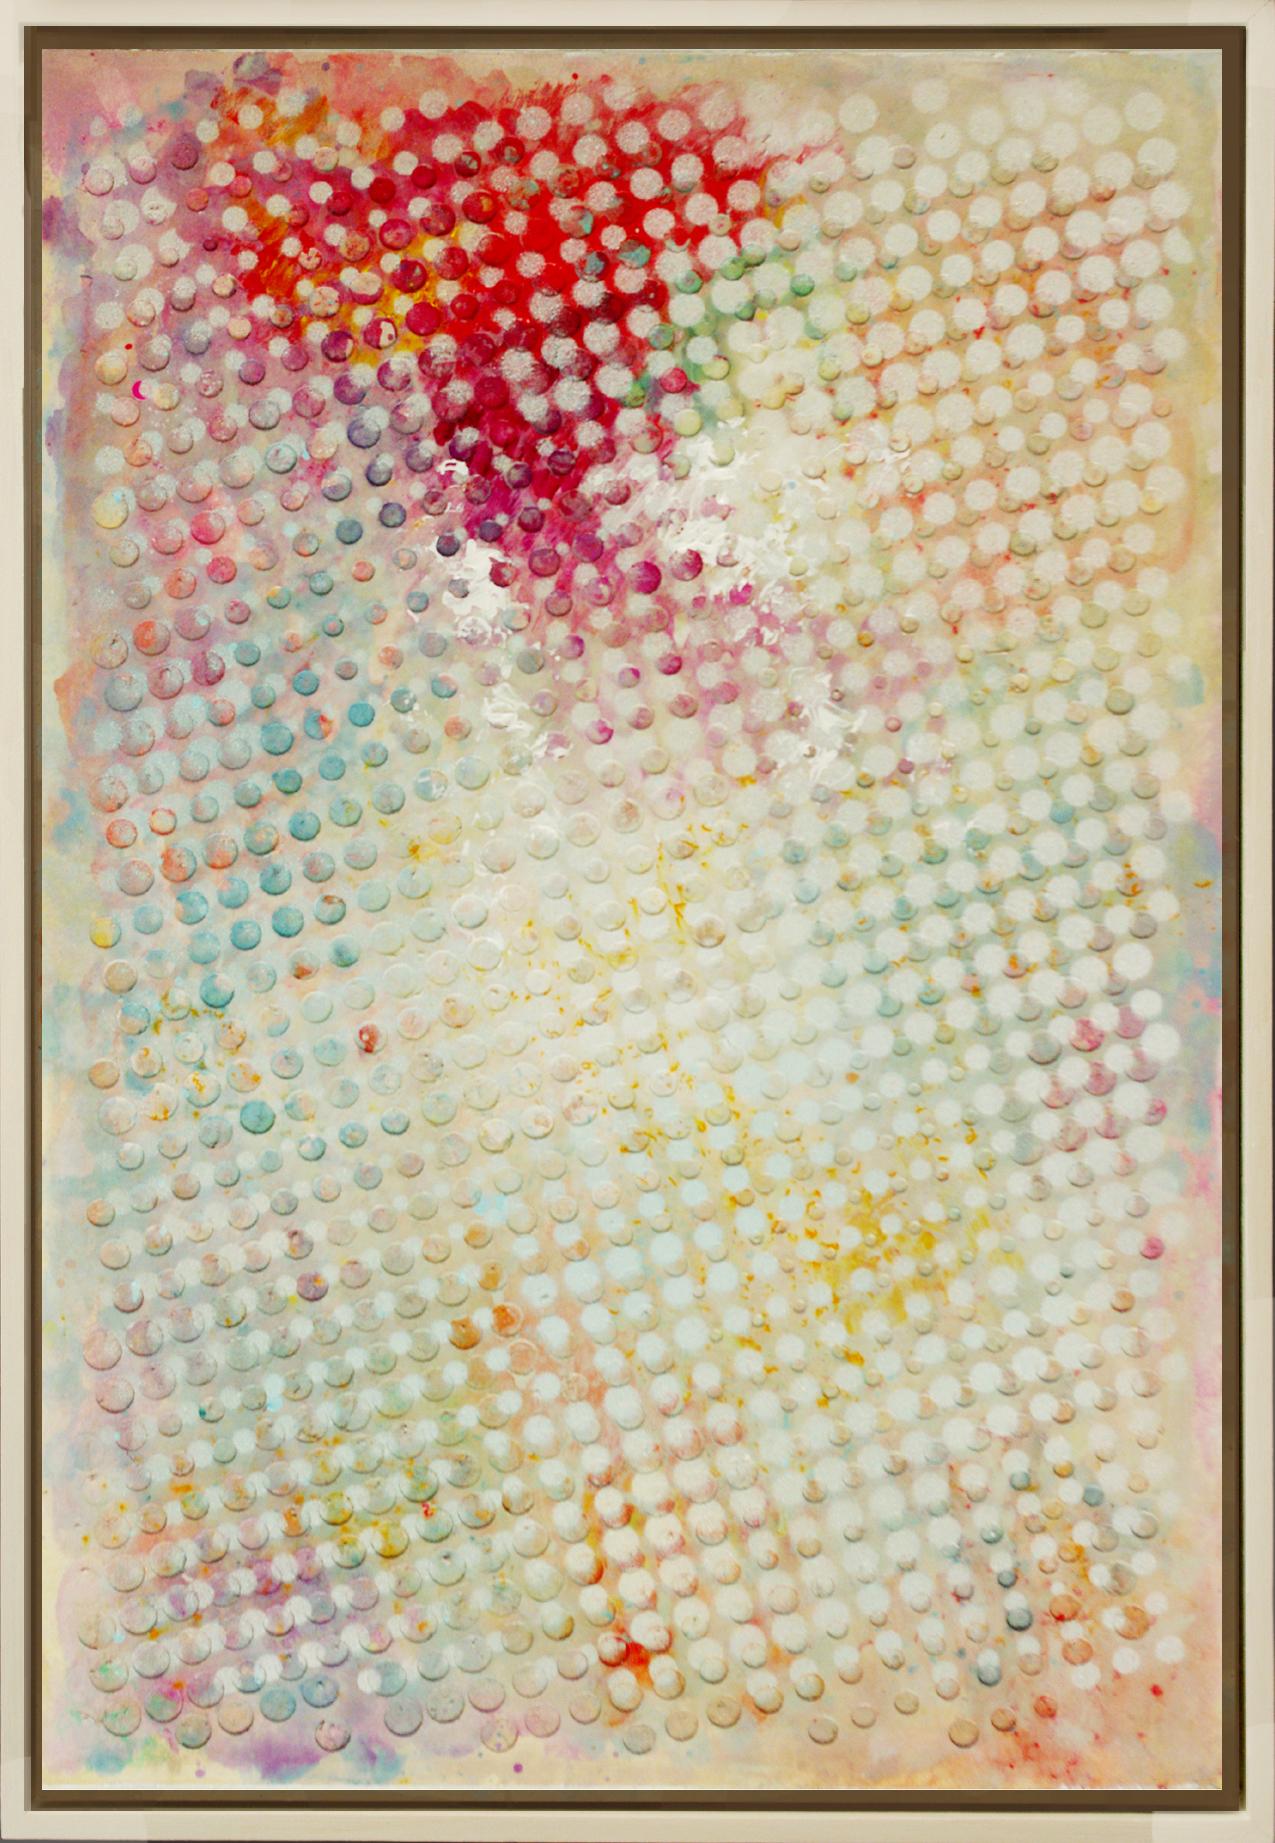 Abstract Painting Francisco Nicolás - ST 018 - Contemporain, abstrait, expressionniste, moderne, art urbain, surréaliste